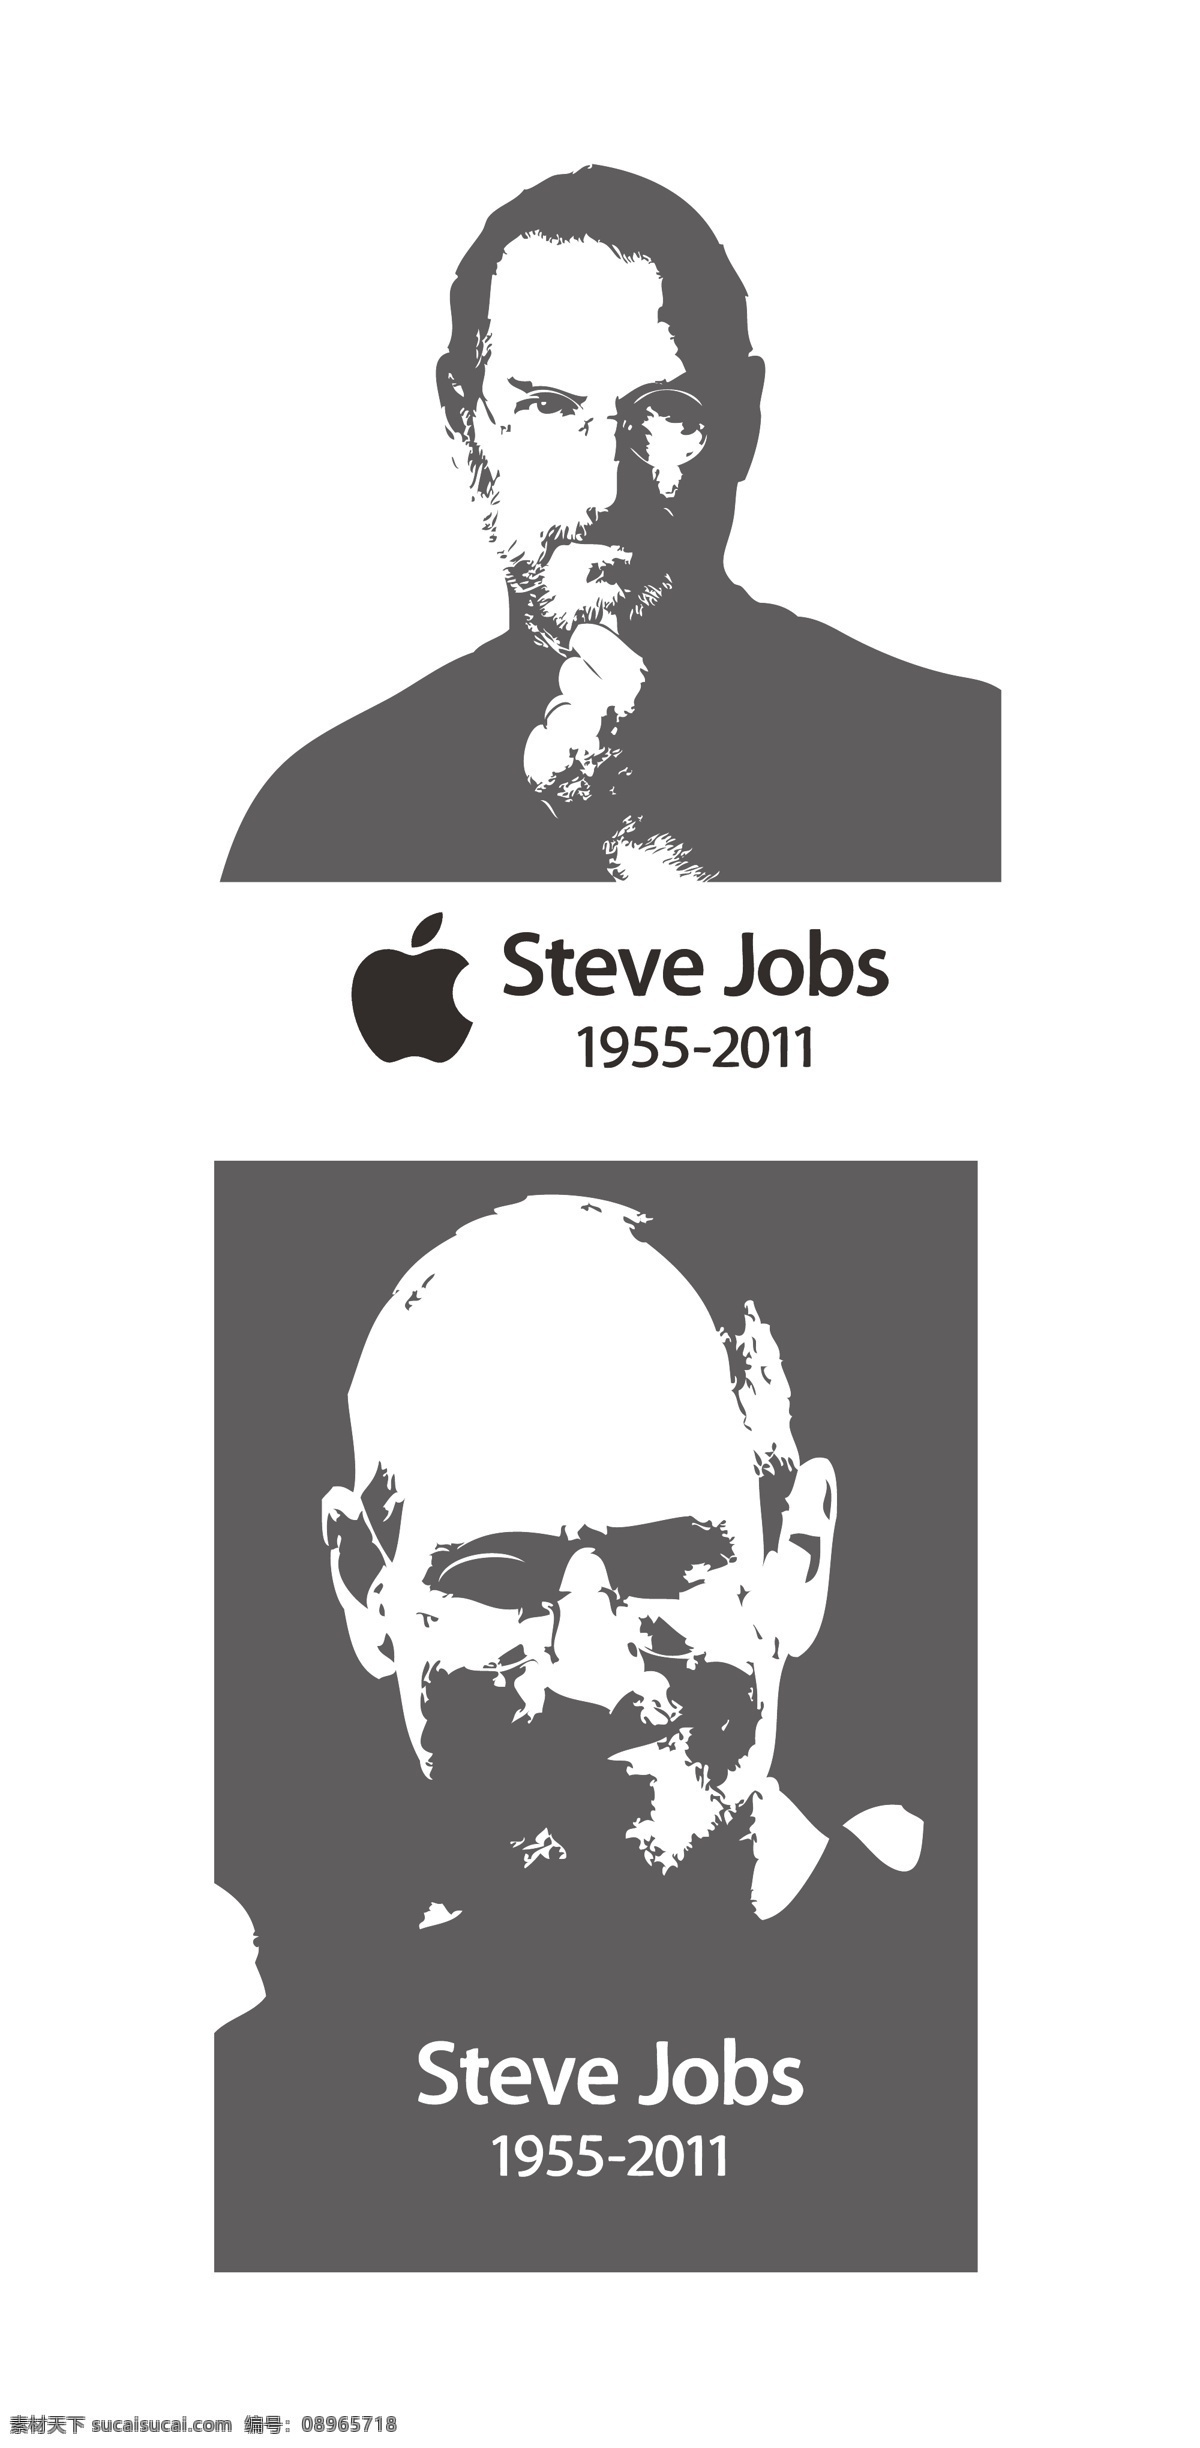 乔布斯 steve jobs 乔 布斯 黑白 矢量 apple 苹果 明星偶像 矢量人物